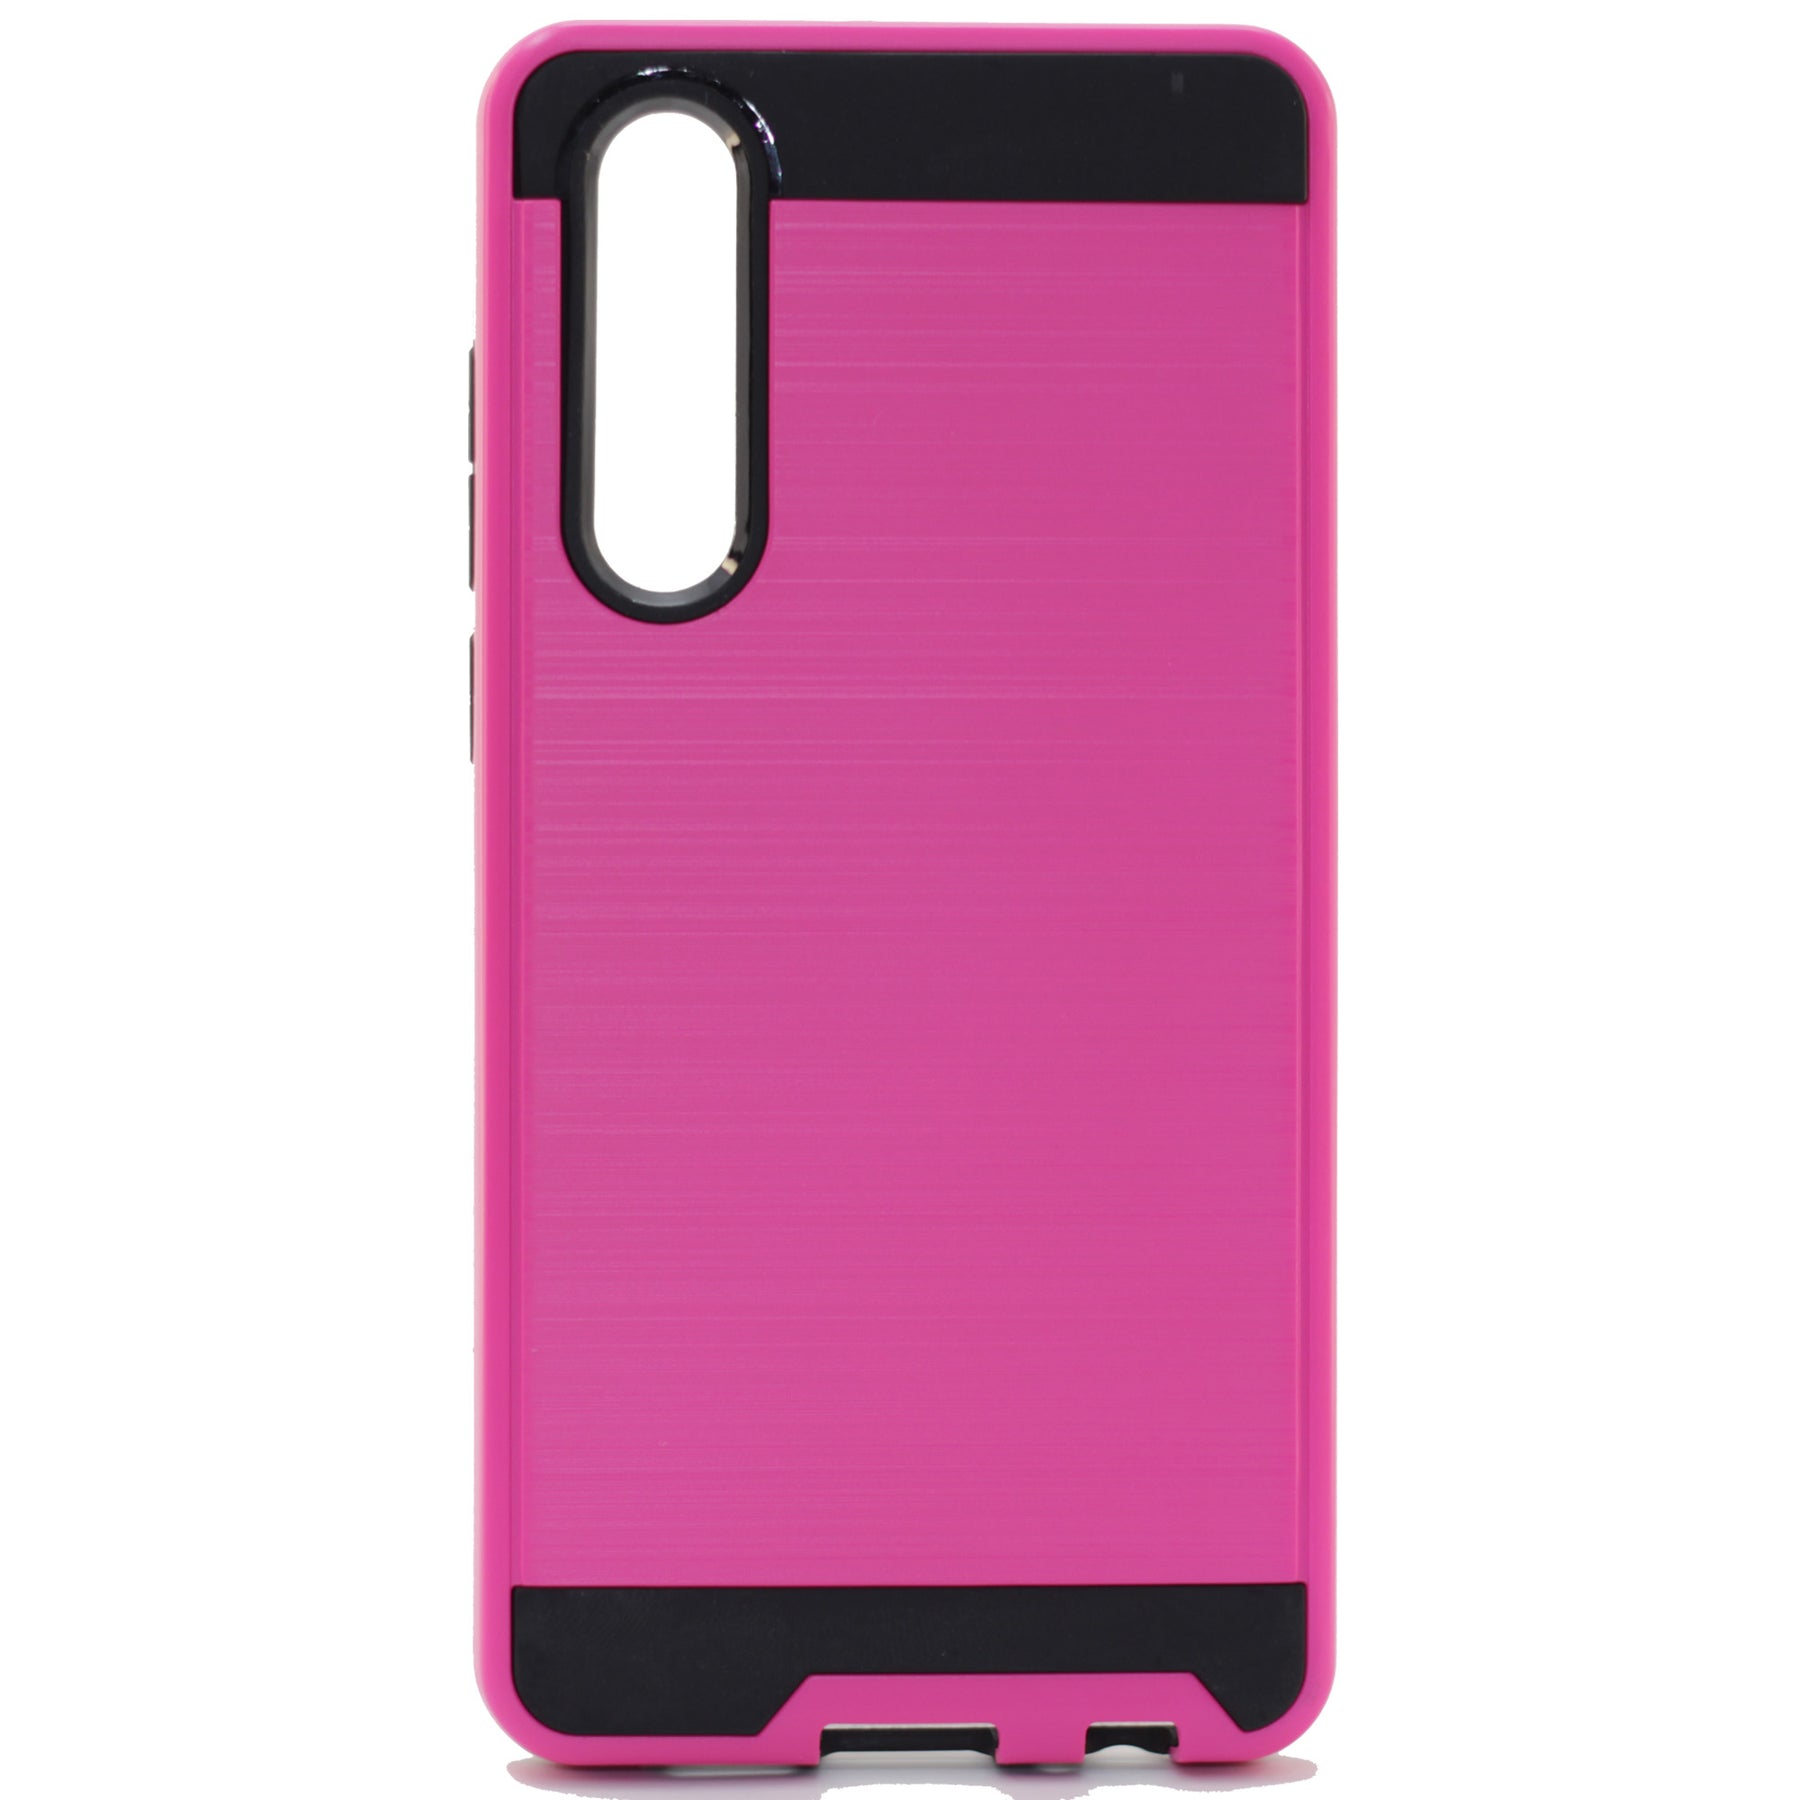 Huawei P30 slim pink case